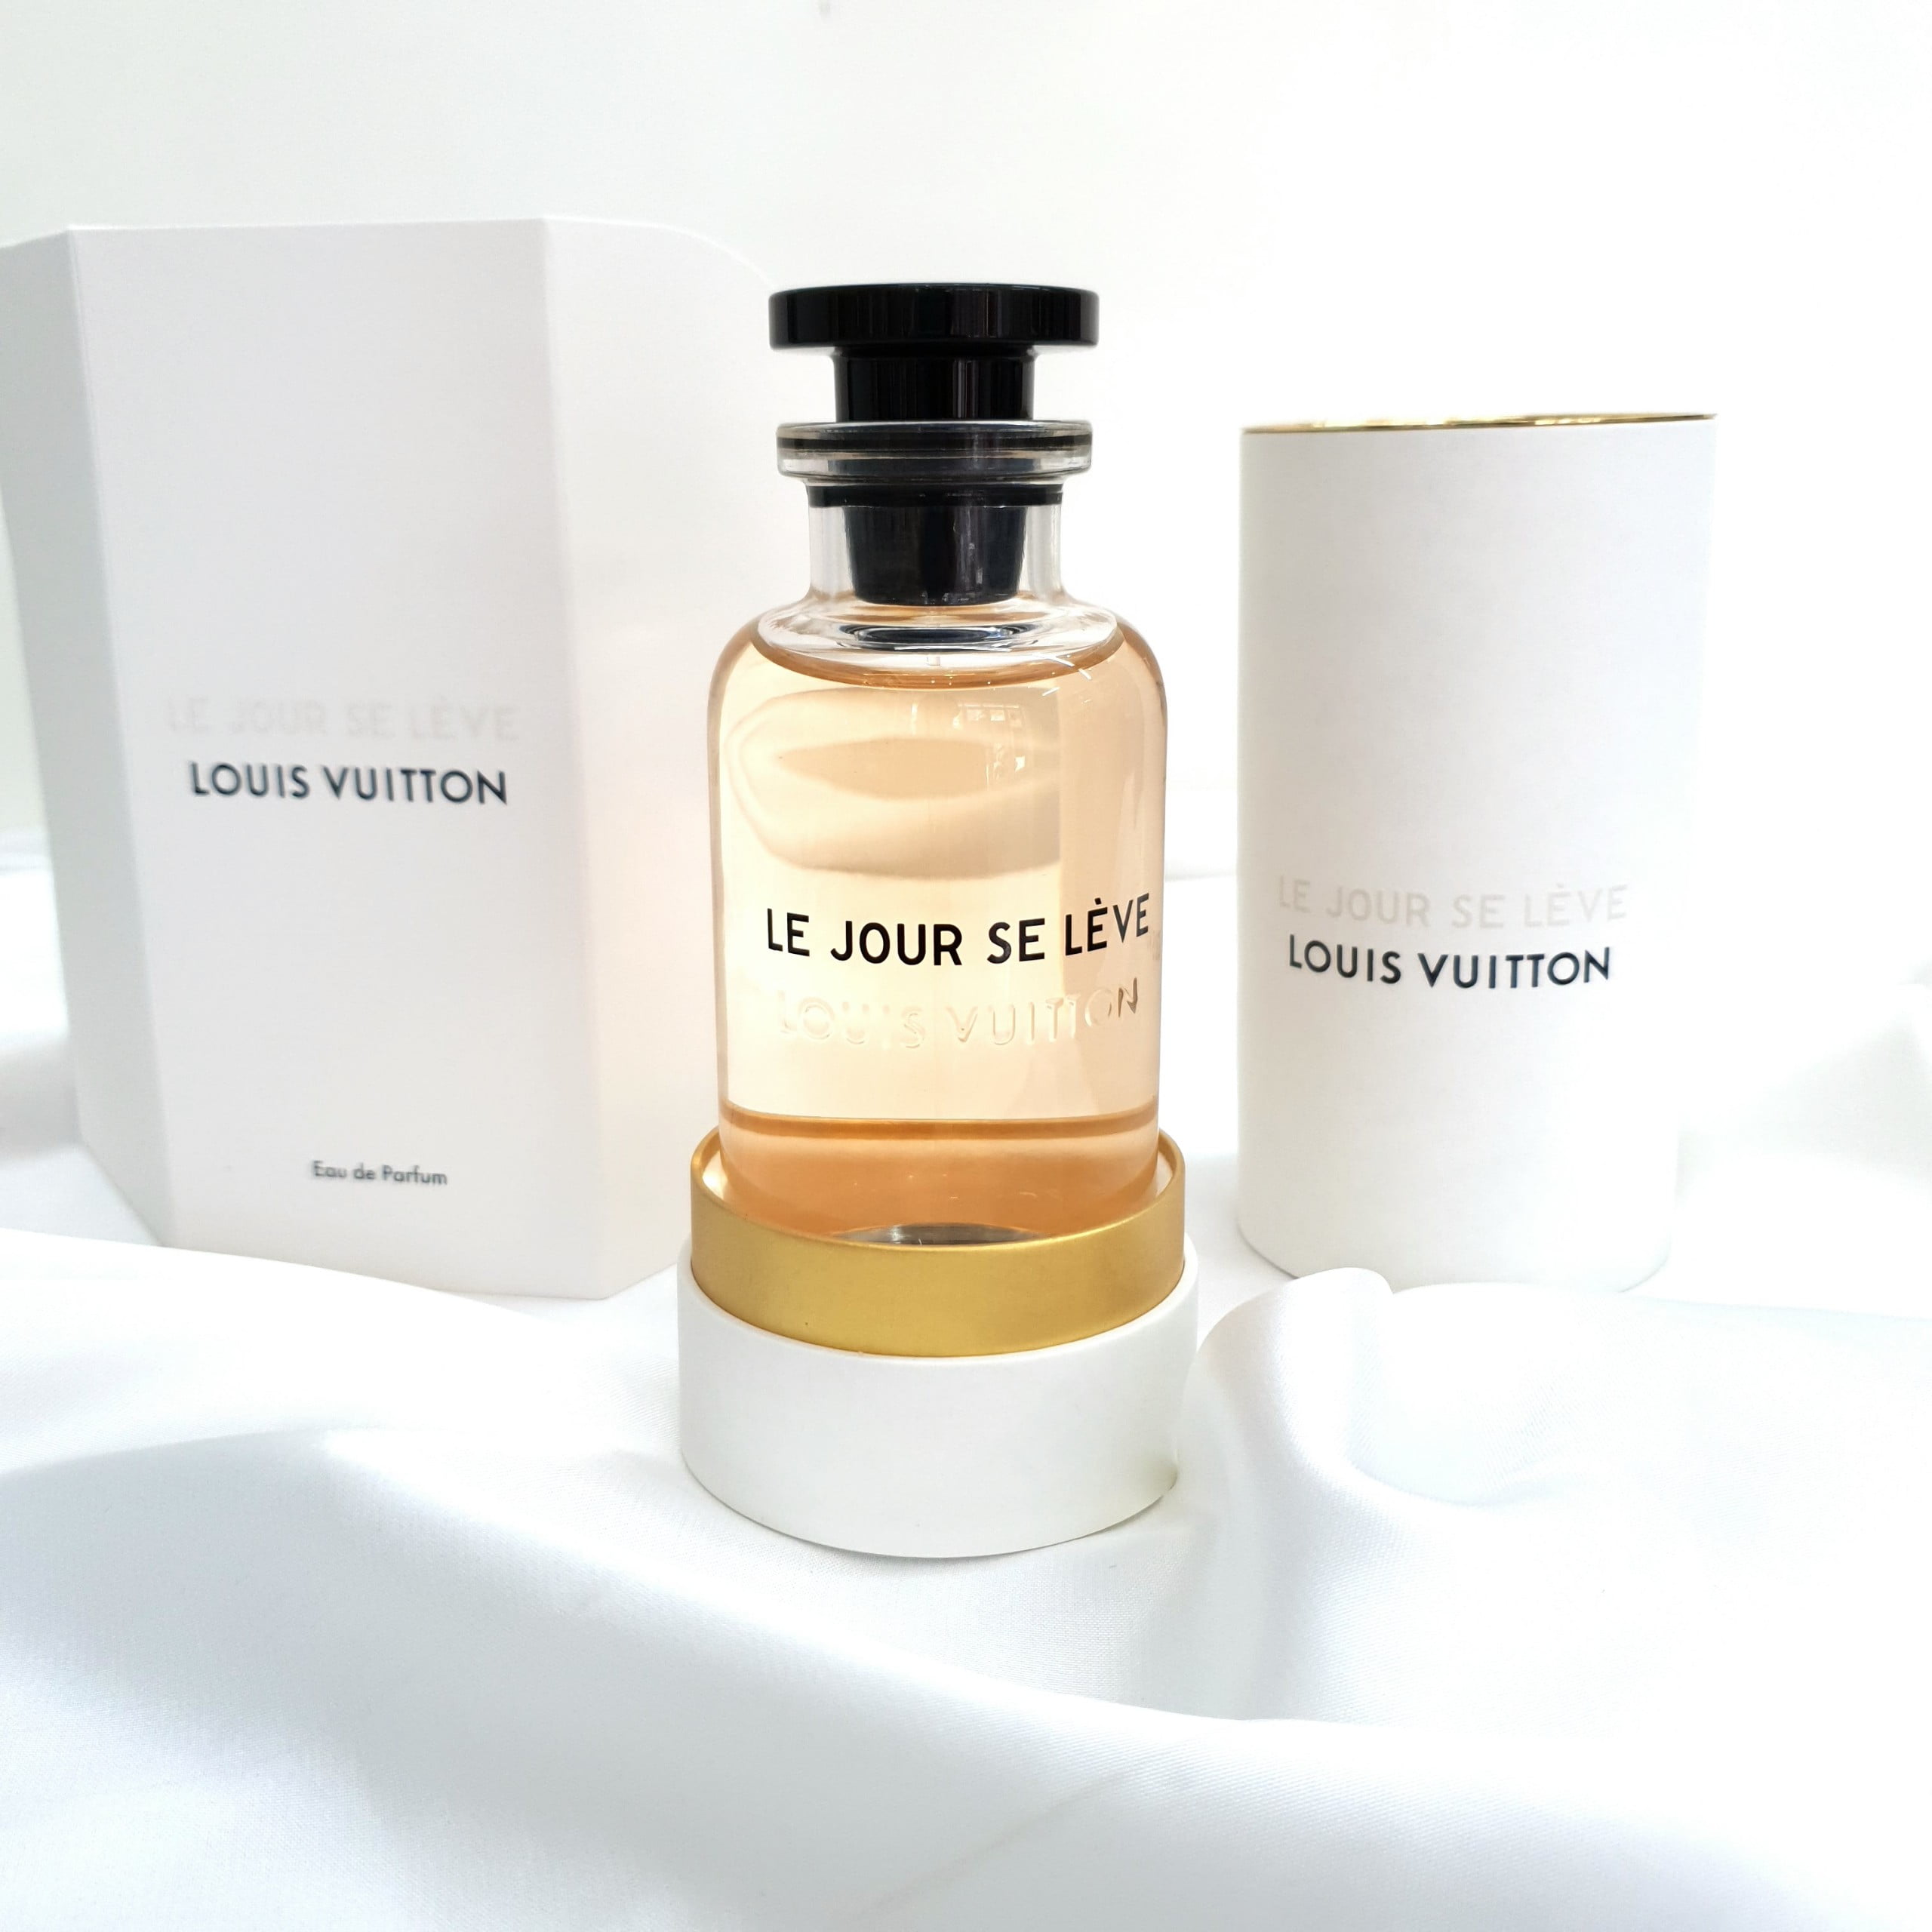 Louis Vuitton và bộ sưu tập nước hoa Les Extrait Cảm xúc tinh tế  Làm đẹp   Vietnam VietnamPlus